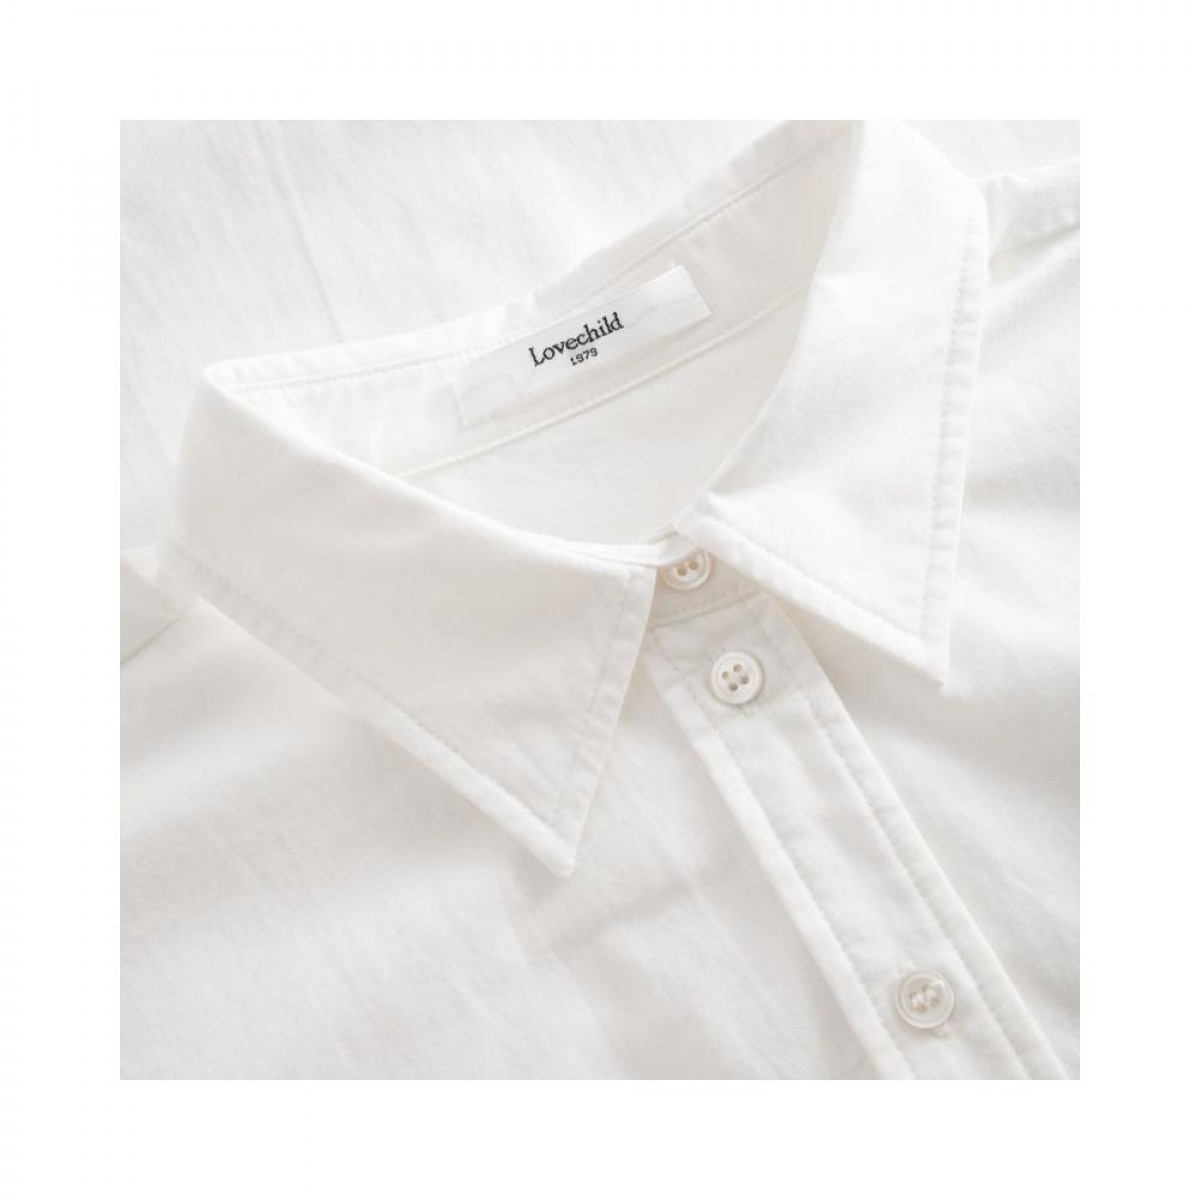 elotta shirt - bright white - krave